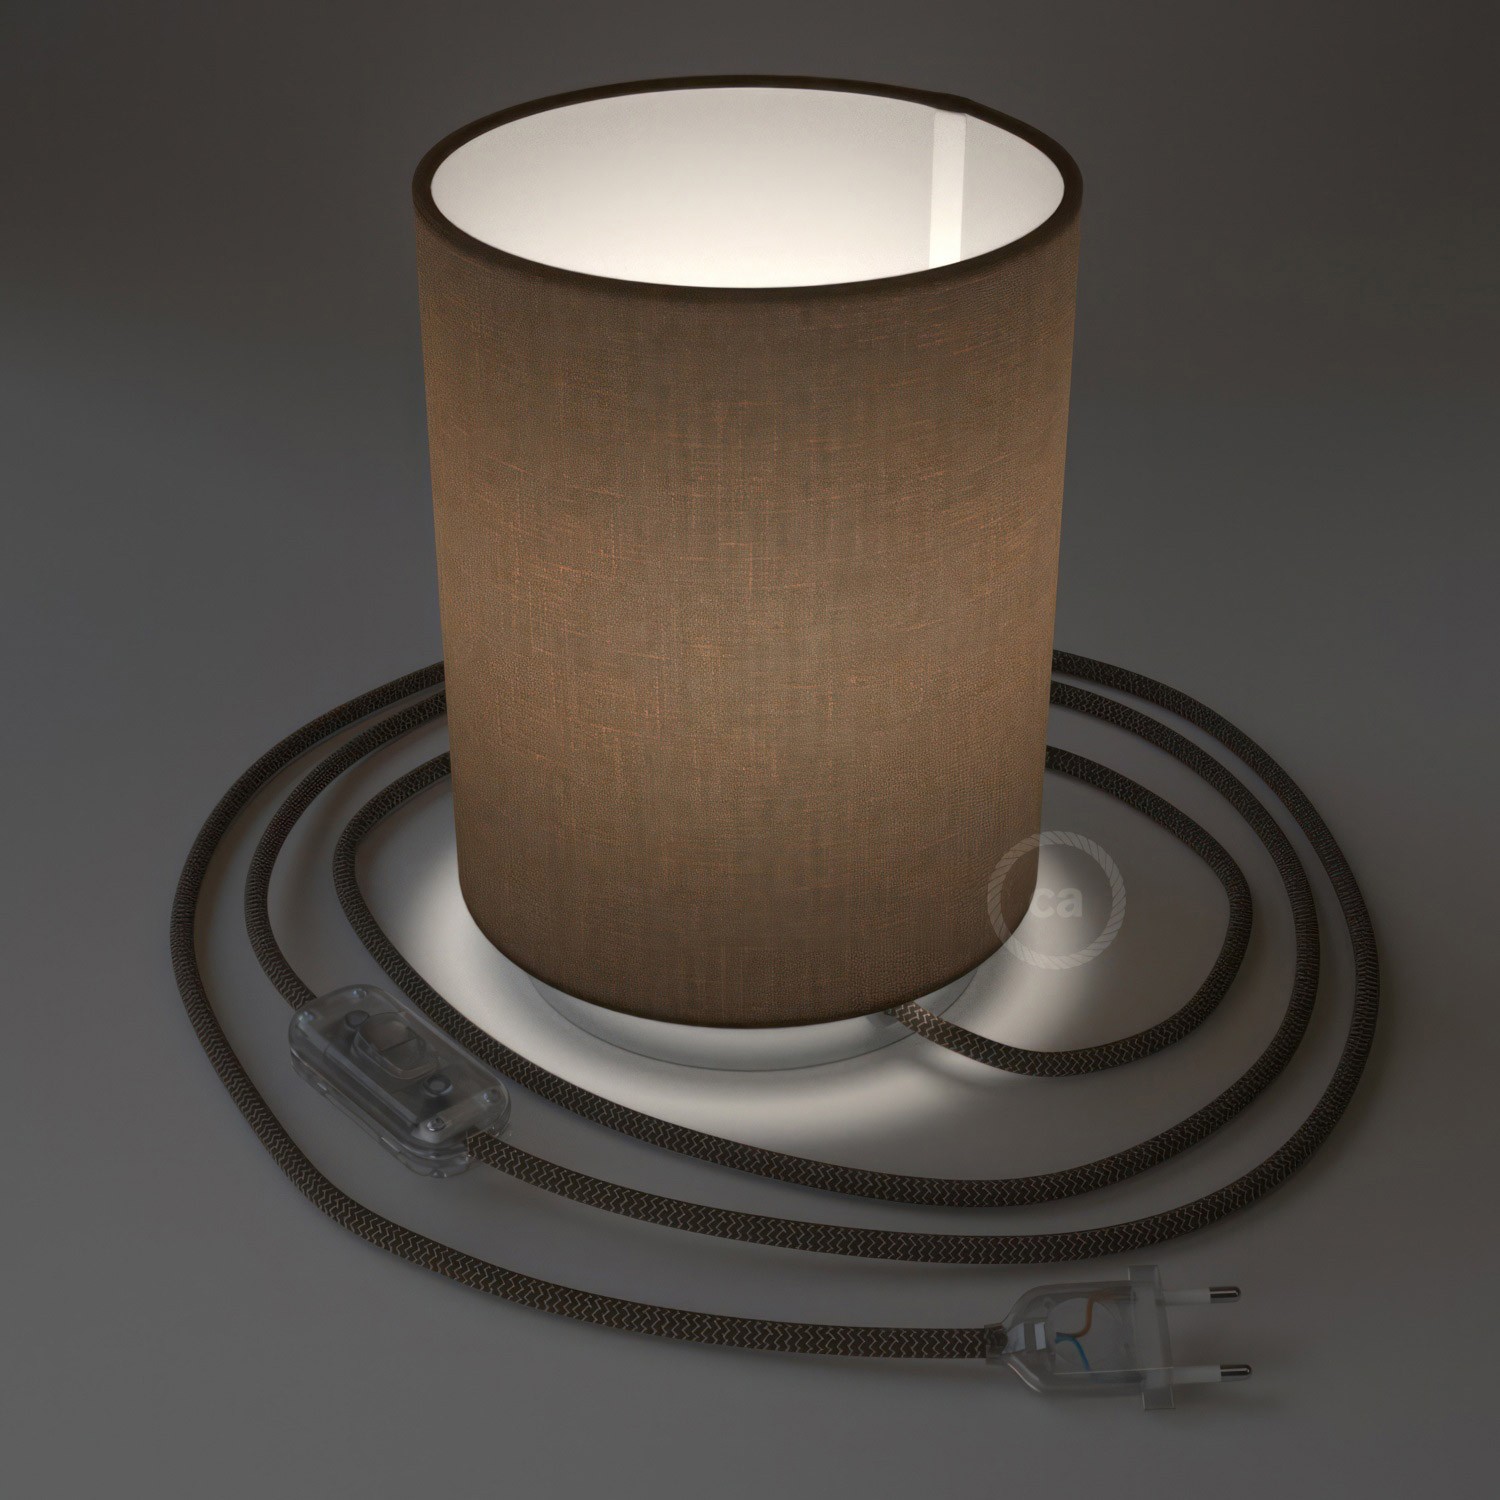 Posaluce Metal met camelot bruine lampenkap Cilindro, inclusief lichtbron, textielkabel, schakelaar en 2-polige stekker